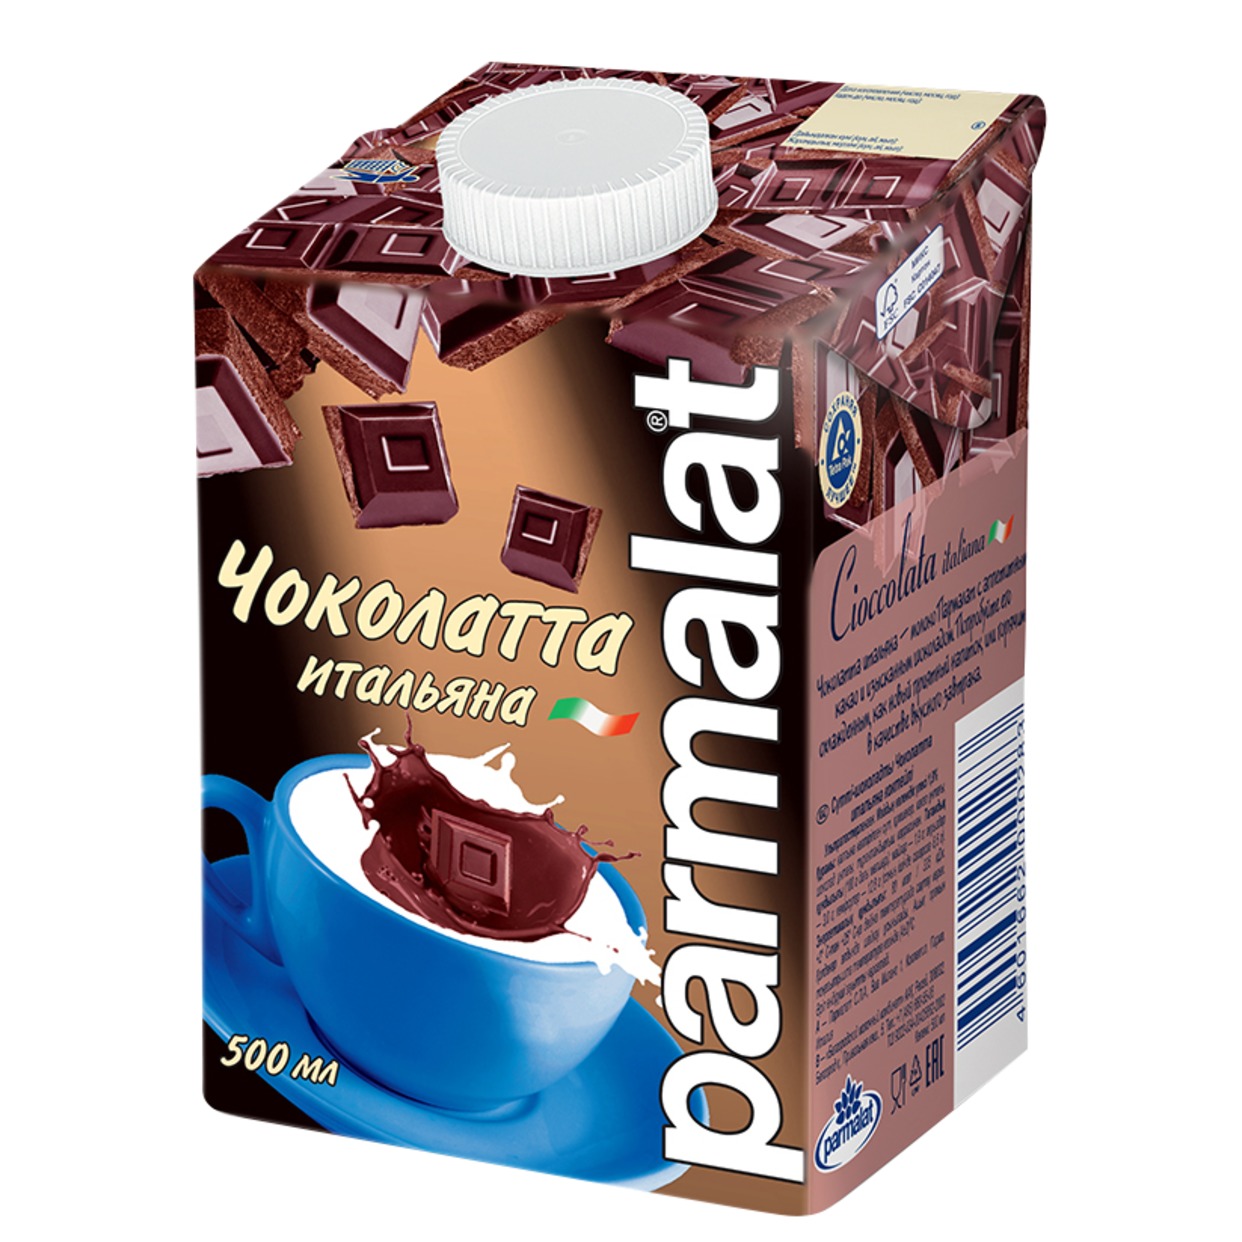 Коктейль молочный Parmalat Чоколатта итальяна 500мл по акции в Пятерочке